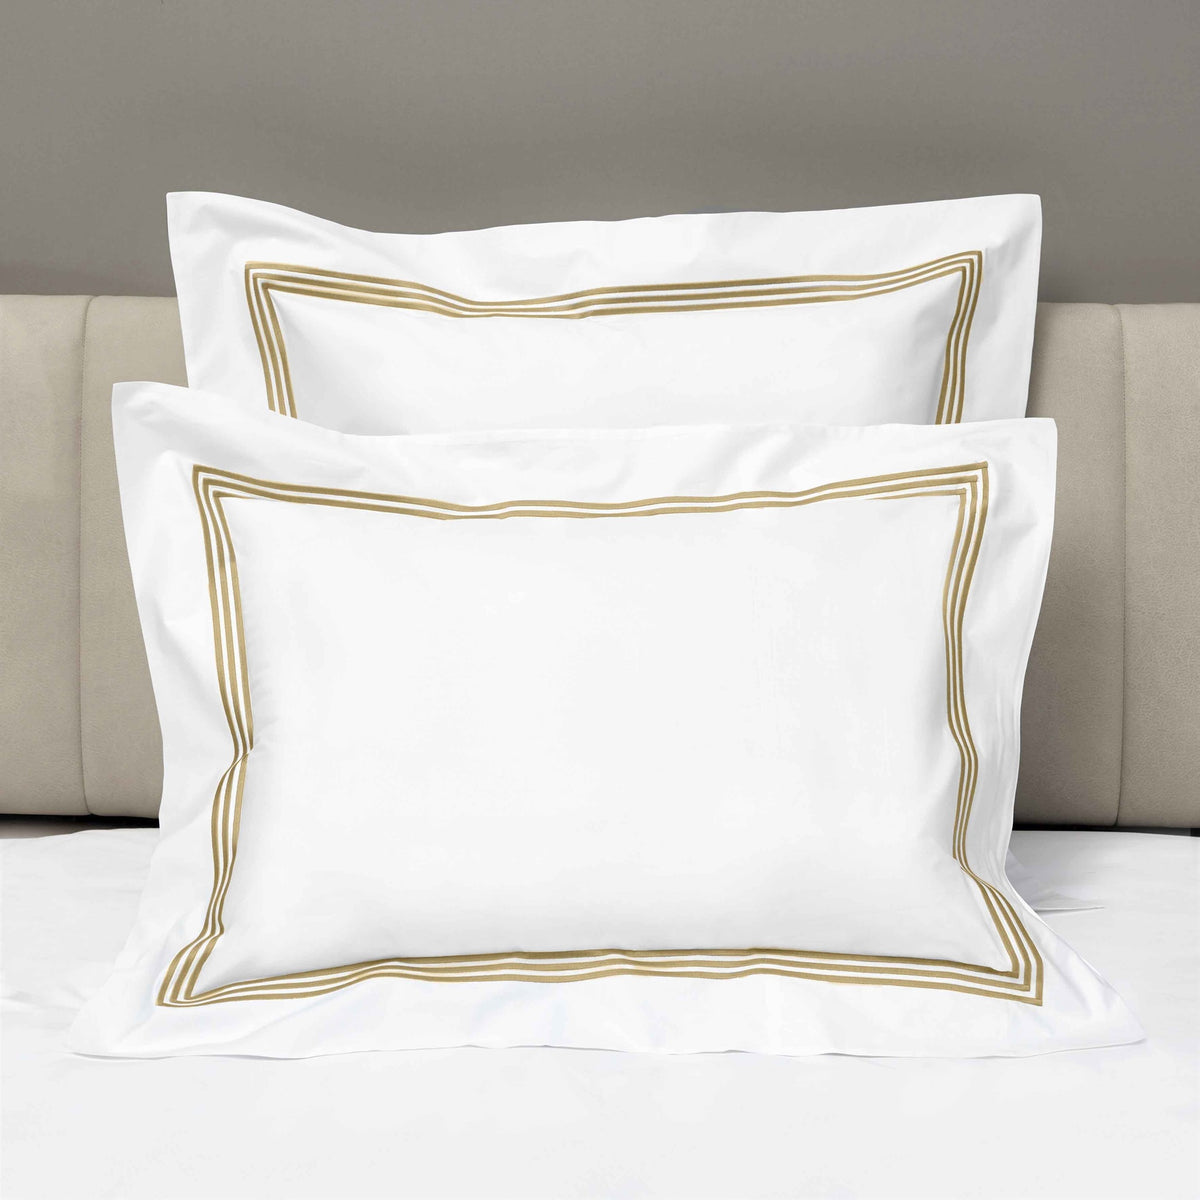 Shams of Signoria Platinum Percale Bedding in White/Caramel Color